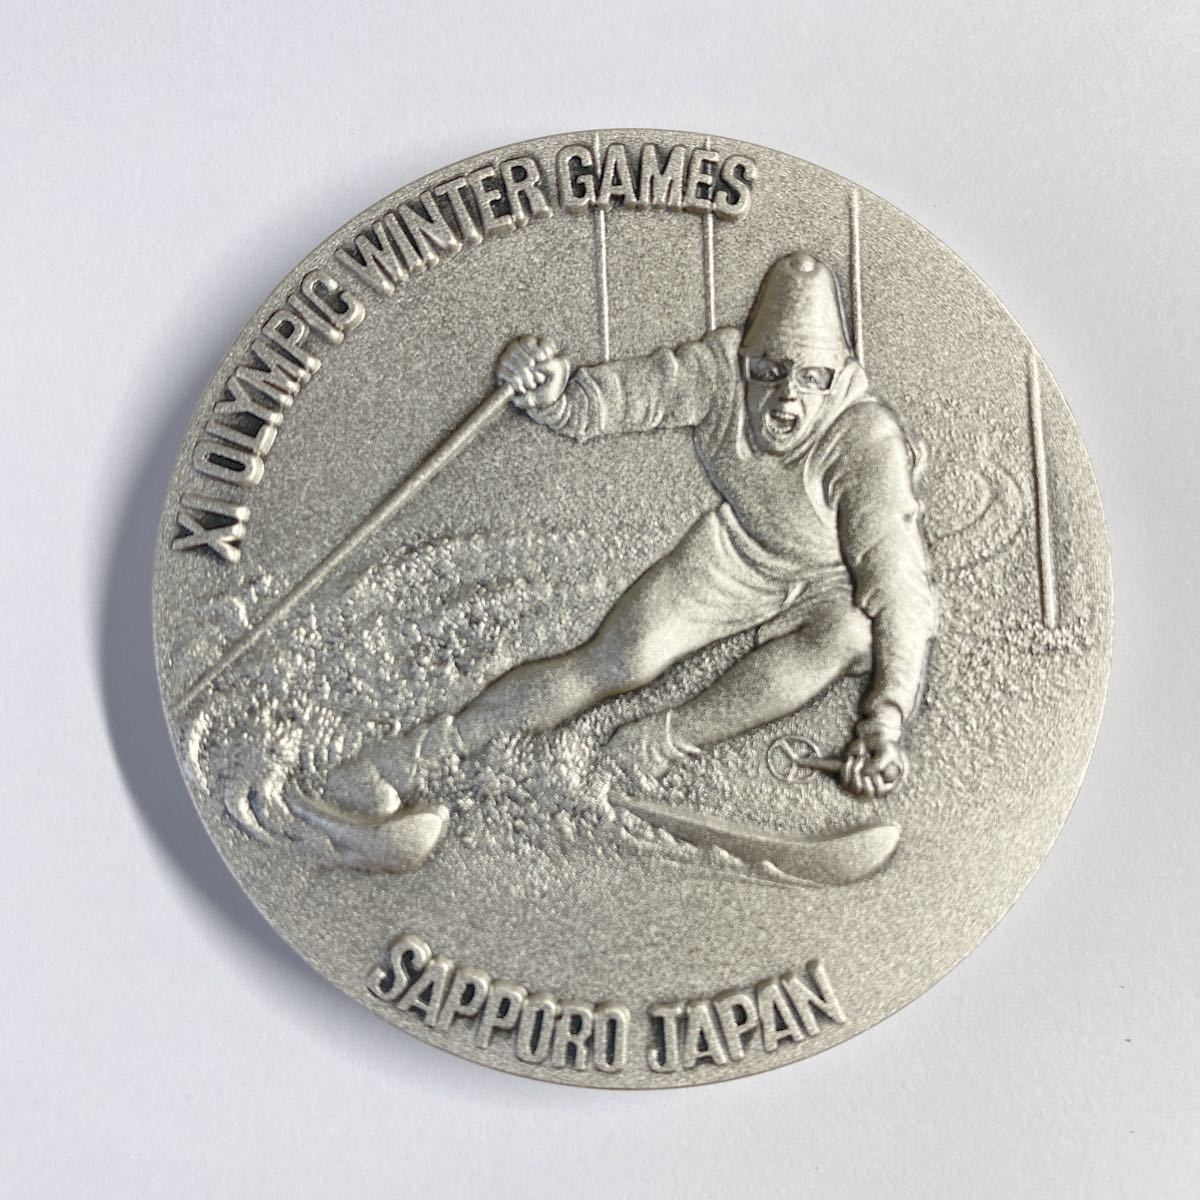 1972 札幌オリンピック 記念メダル 純銀 130g 造幣局